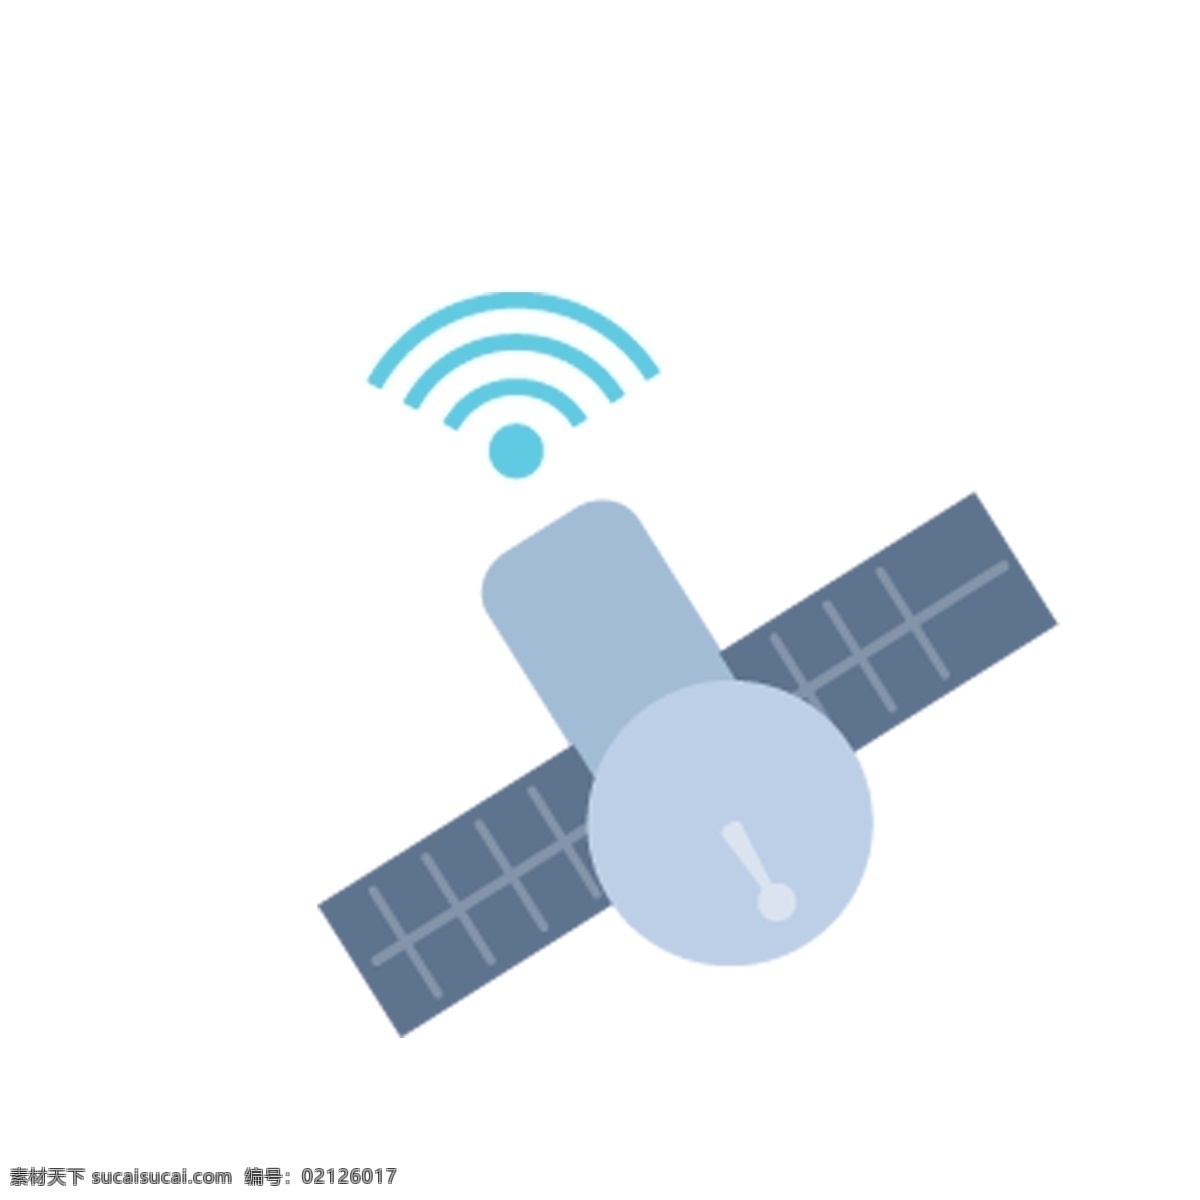 卫星定位 系统 免 扣 图 卡通 定位 wifi 数据 飞起来的定位 卫星定位系统